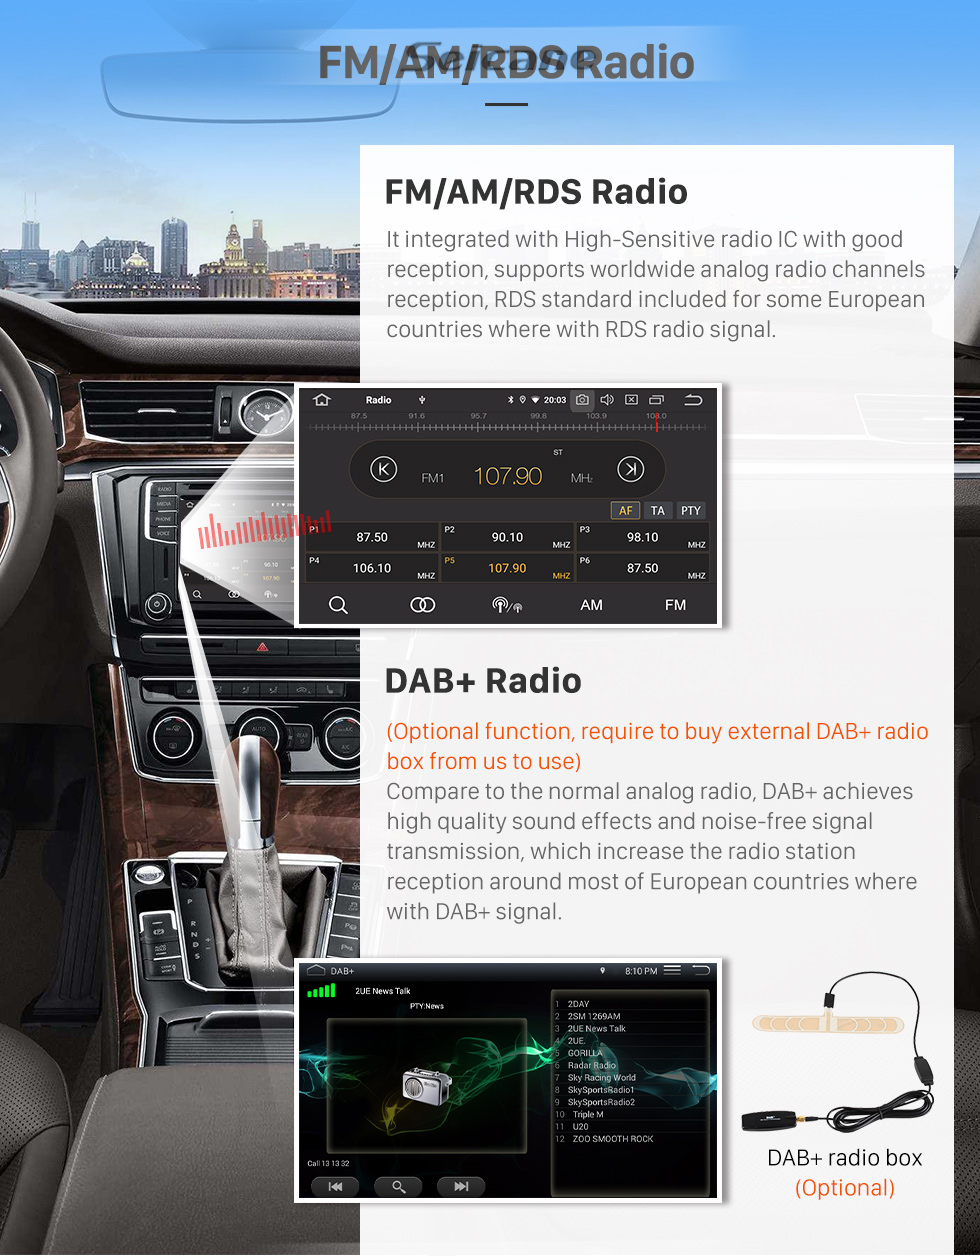 Seicane OEM Android 12.0 para 2013 INFINITI FX35/ FX37 Rádio com Bluetooth 9 polegadas HD Touchscreen Sistema de Navegação GPS Carplay suporte DSP